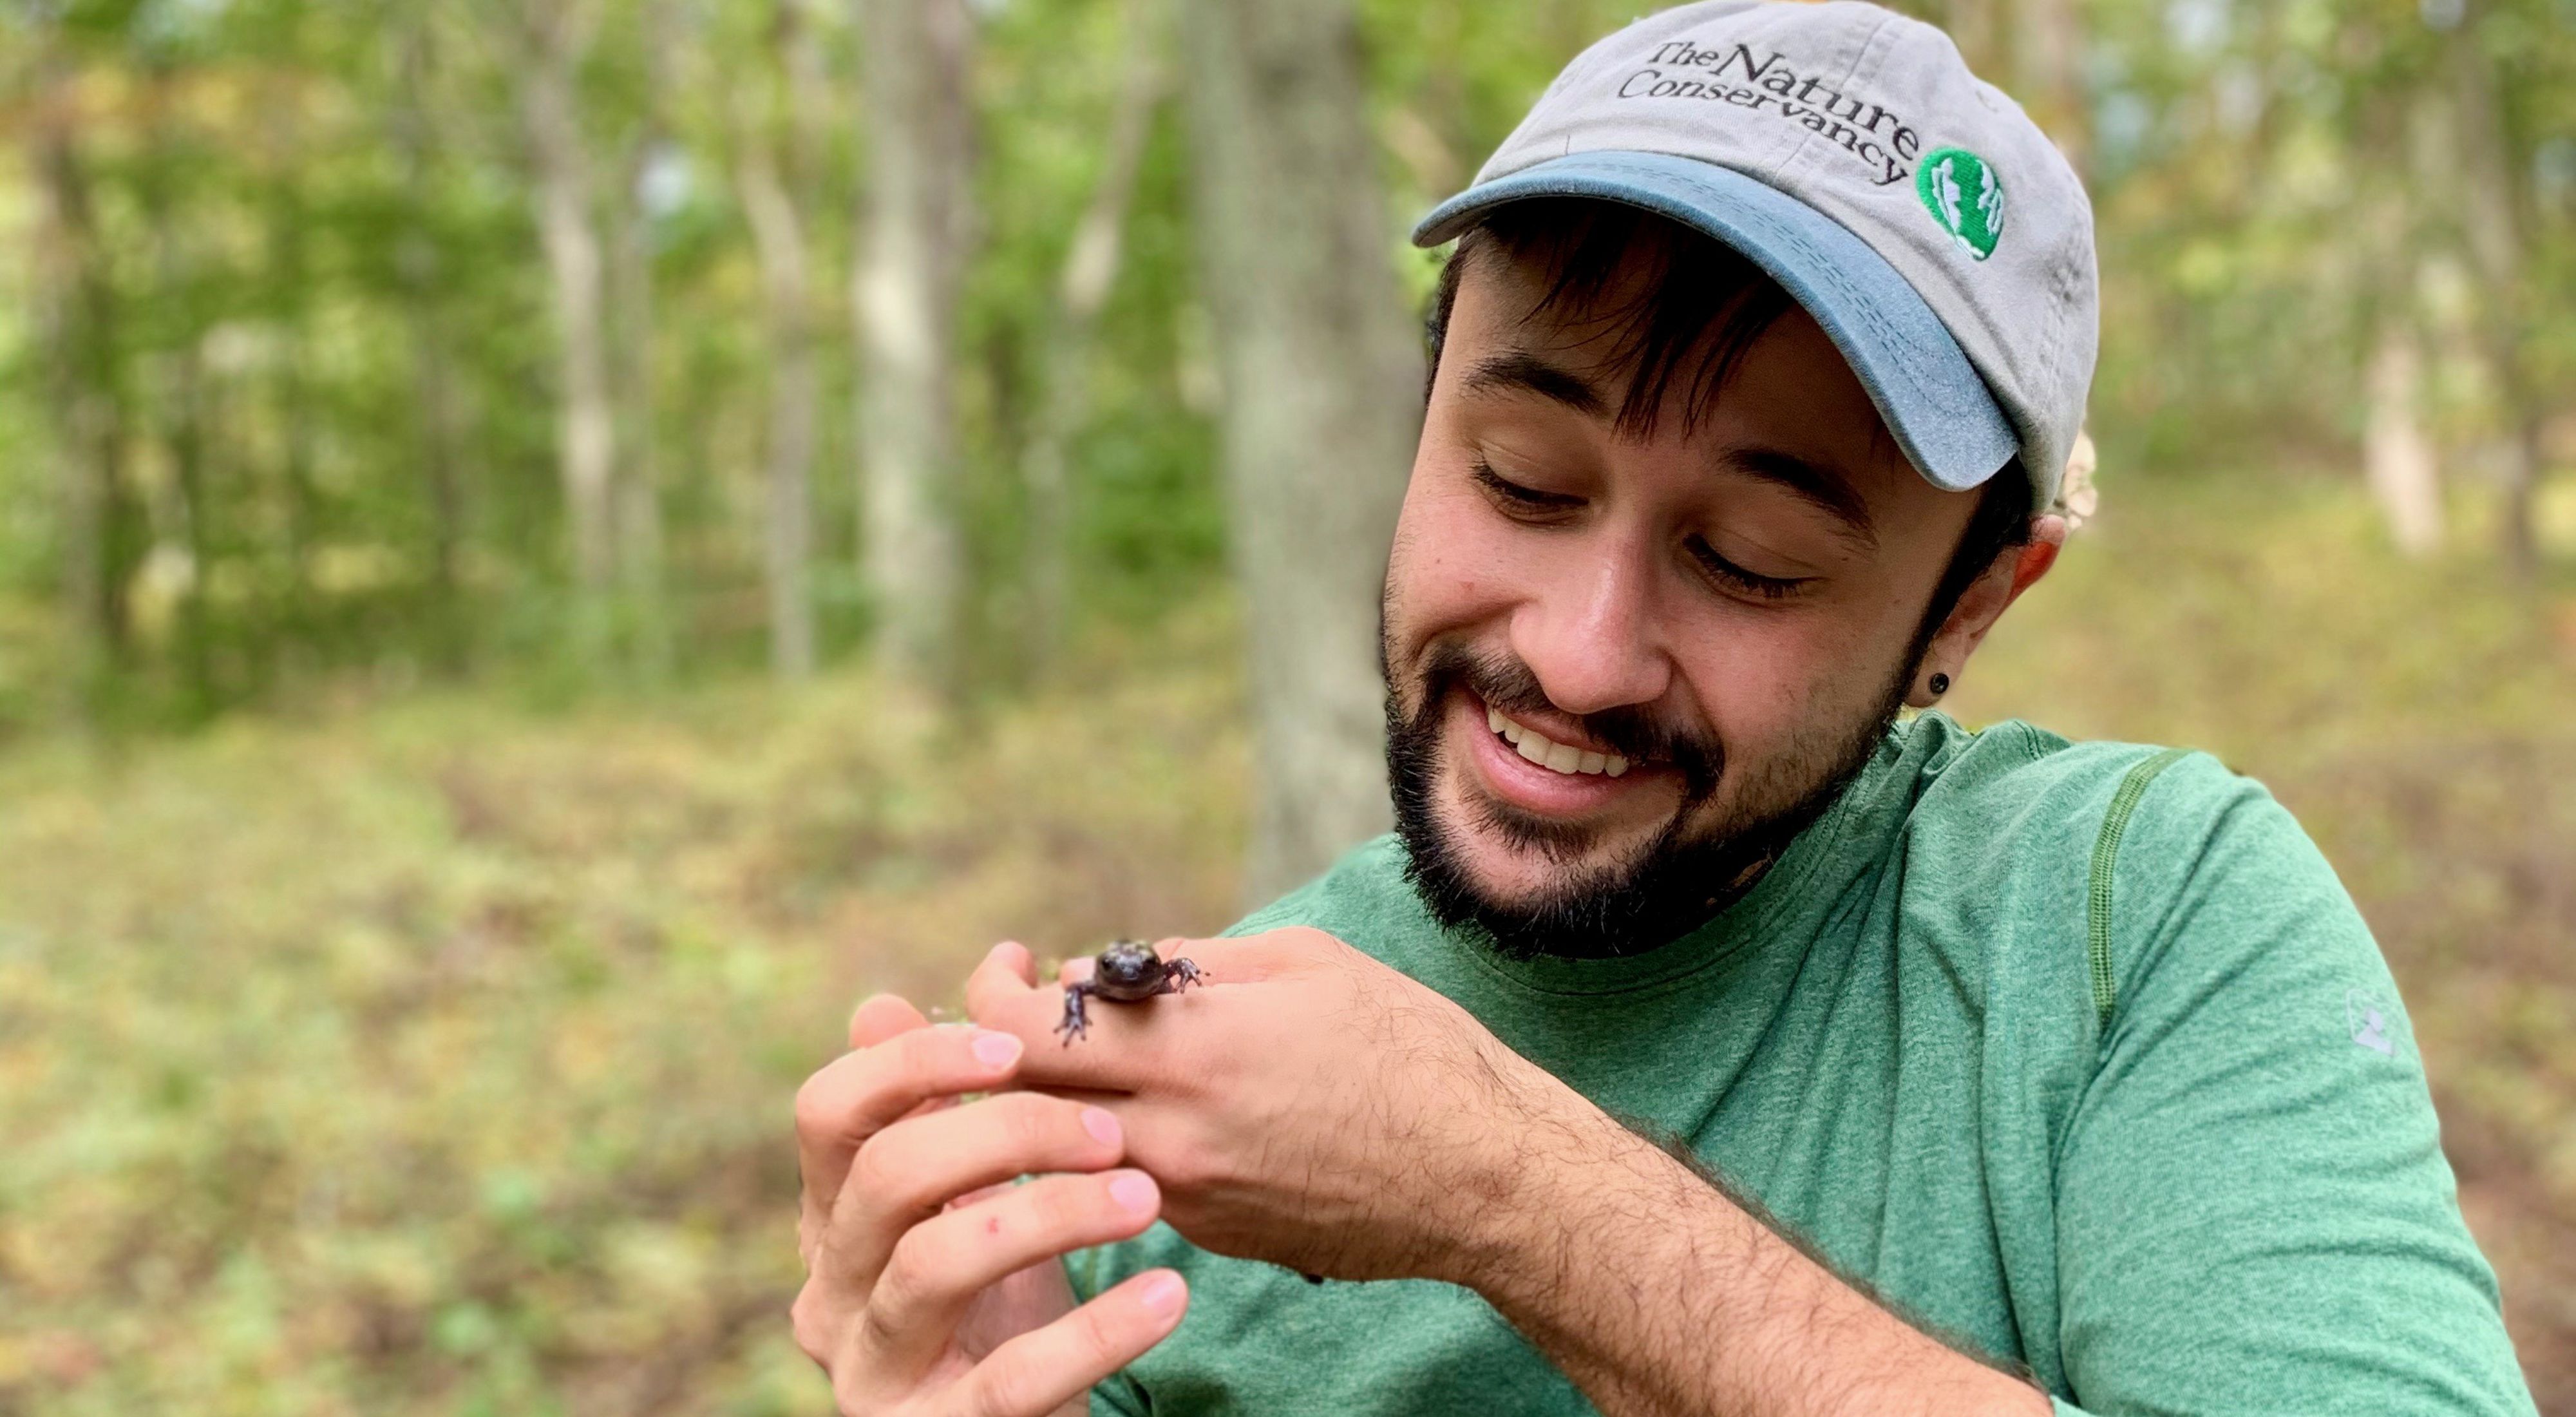 Alex Novarro viste una gorra de "The Nature Conservancy" y sonríe mientras sostiene y observa una salamandra.